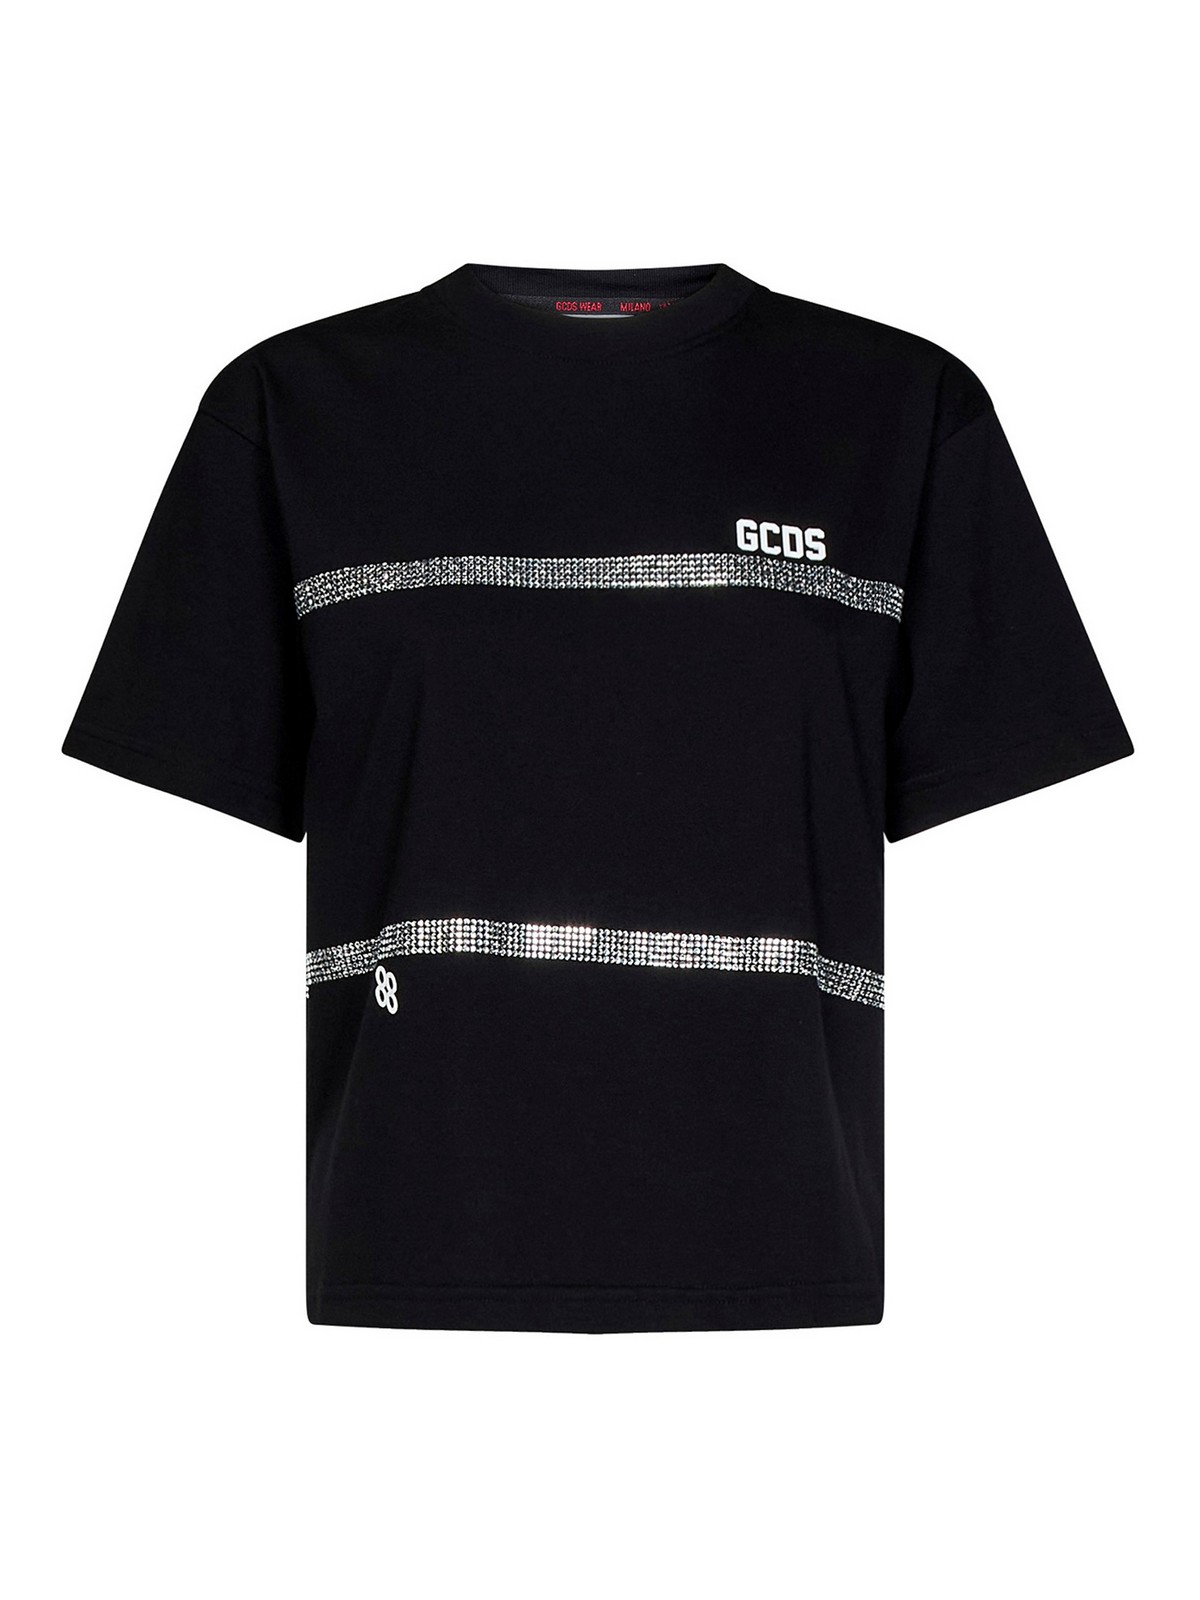 Gcds Jersey T-shirt In Black